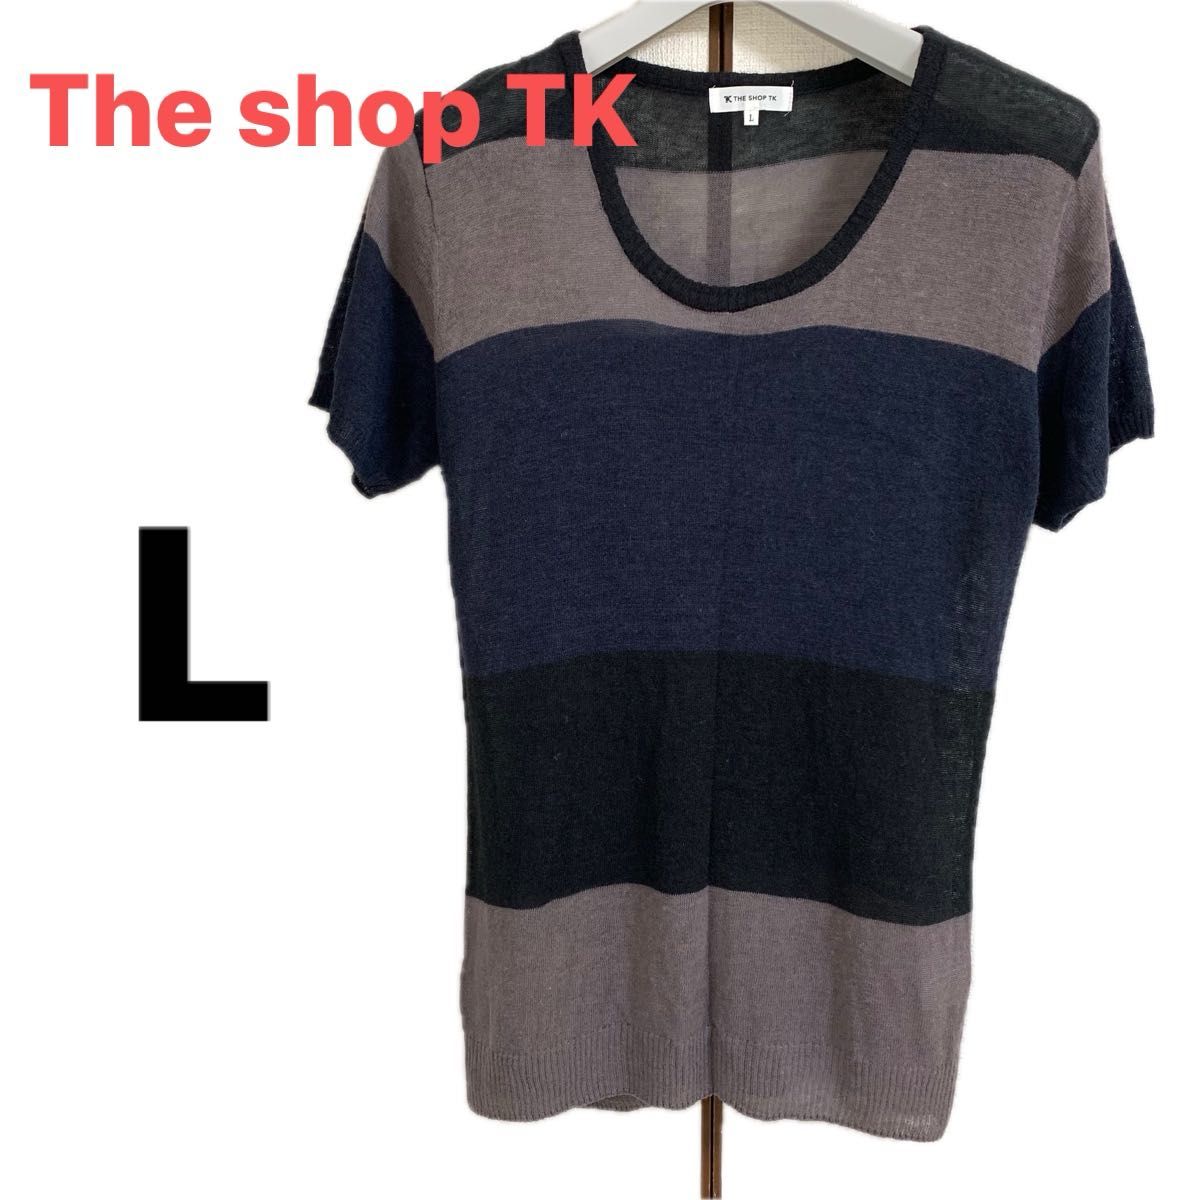 TheshopTK ザショップティーケー Lサイズ Tシャツ 半袖 カットソー ニット クルーネック ブラック シアー  Uネック